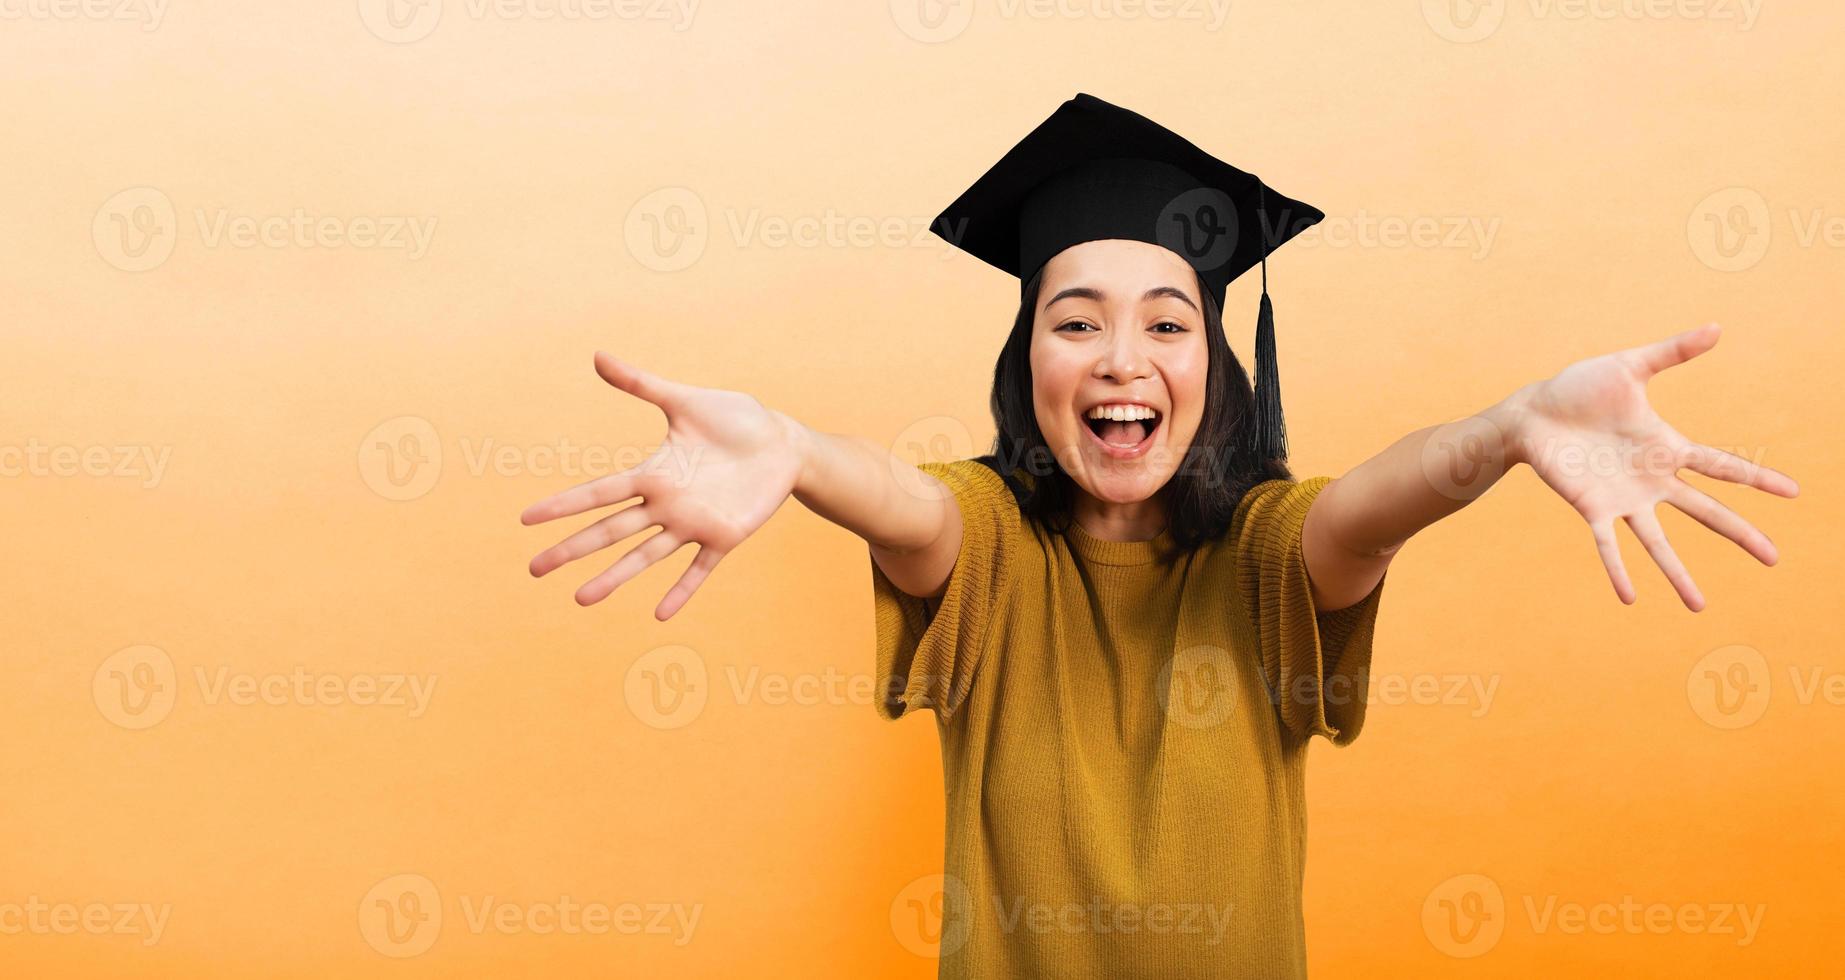 vrouw is gelukkig naar hebben bereikt diploma uitreiking. concept van succes in studies foto